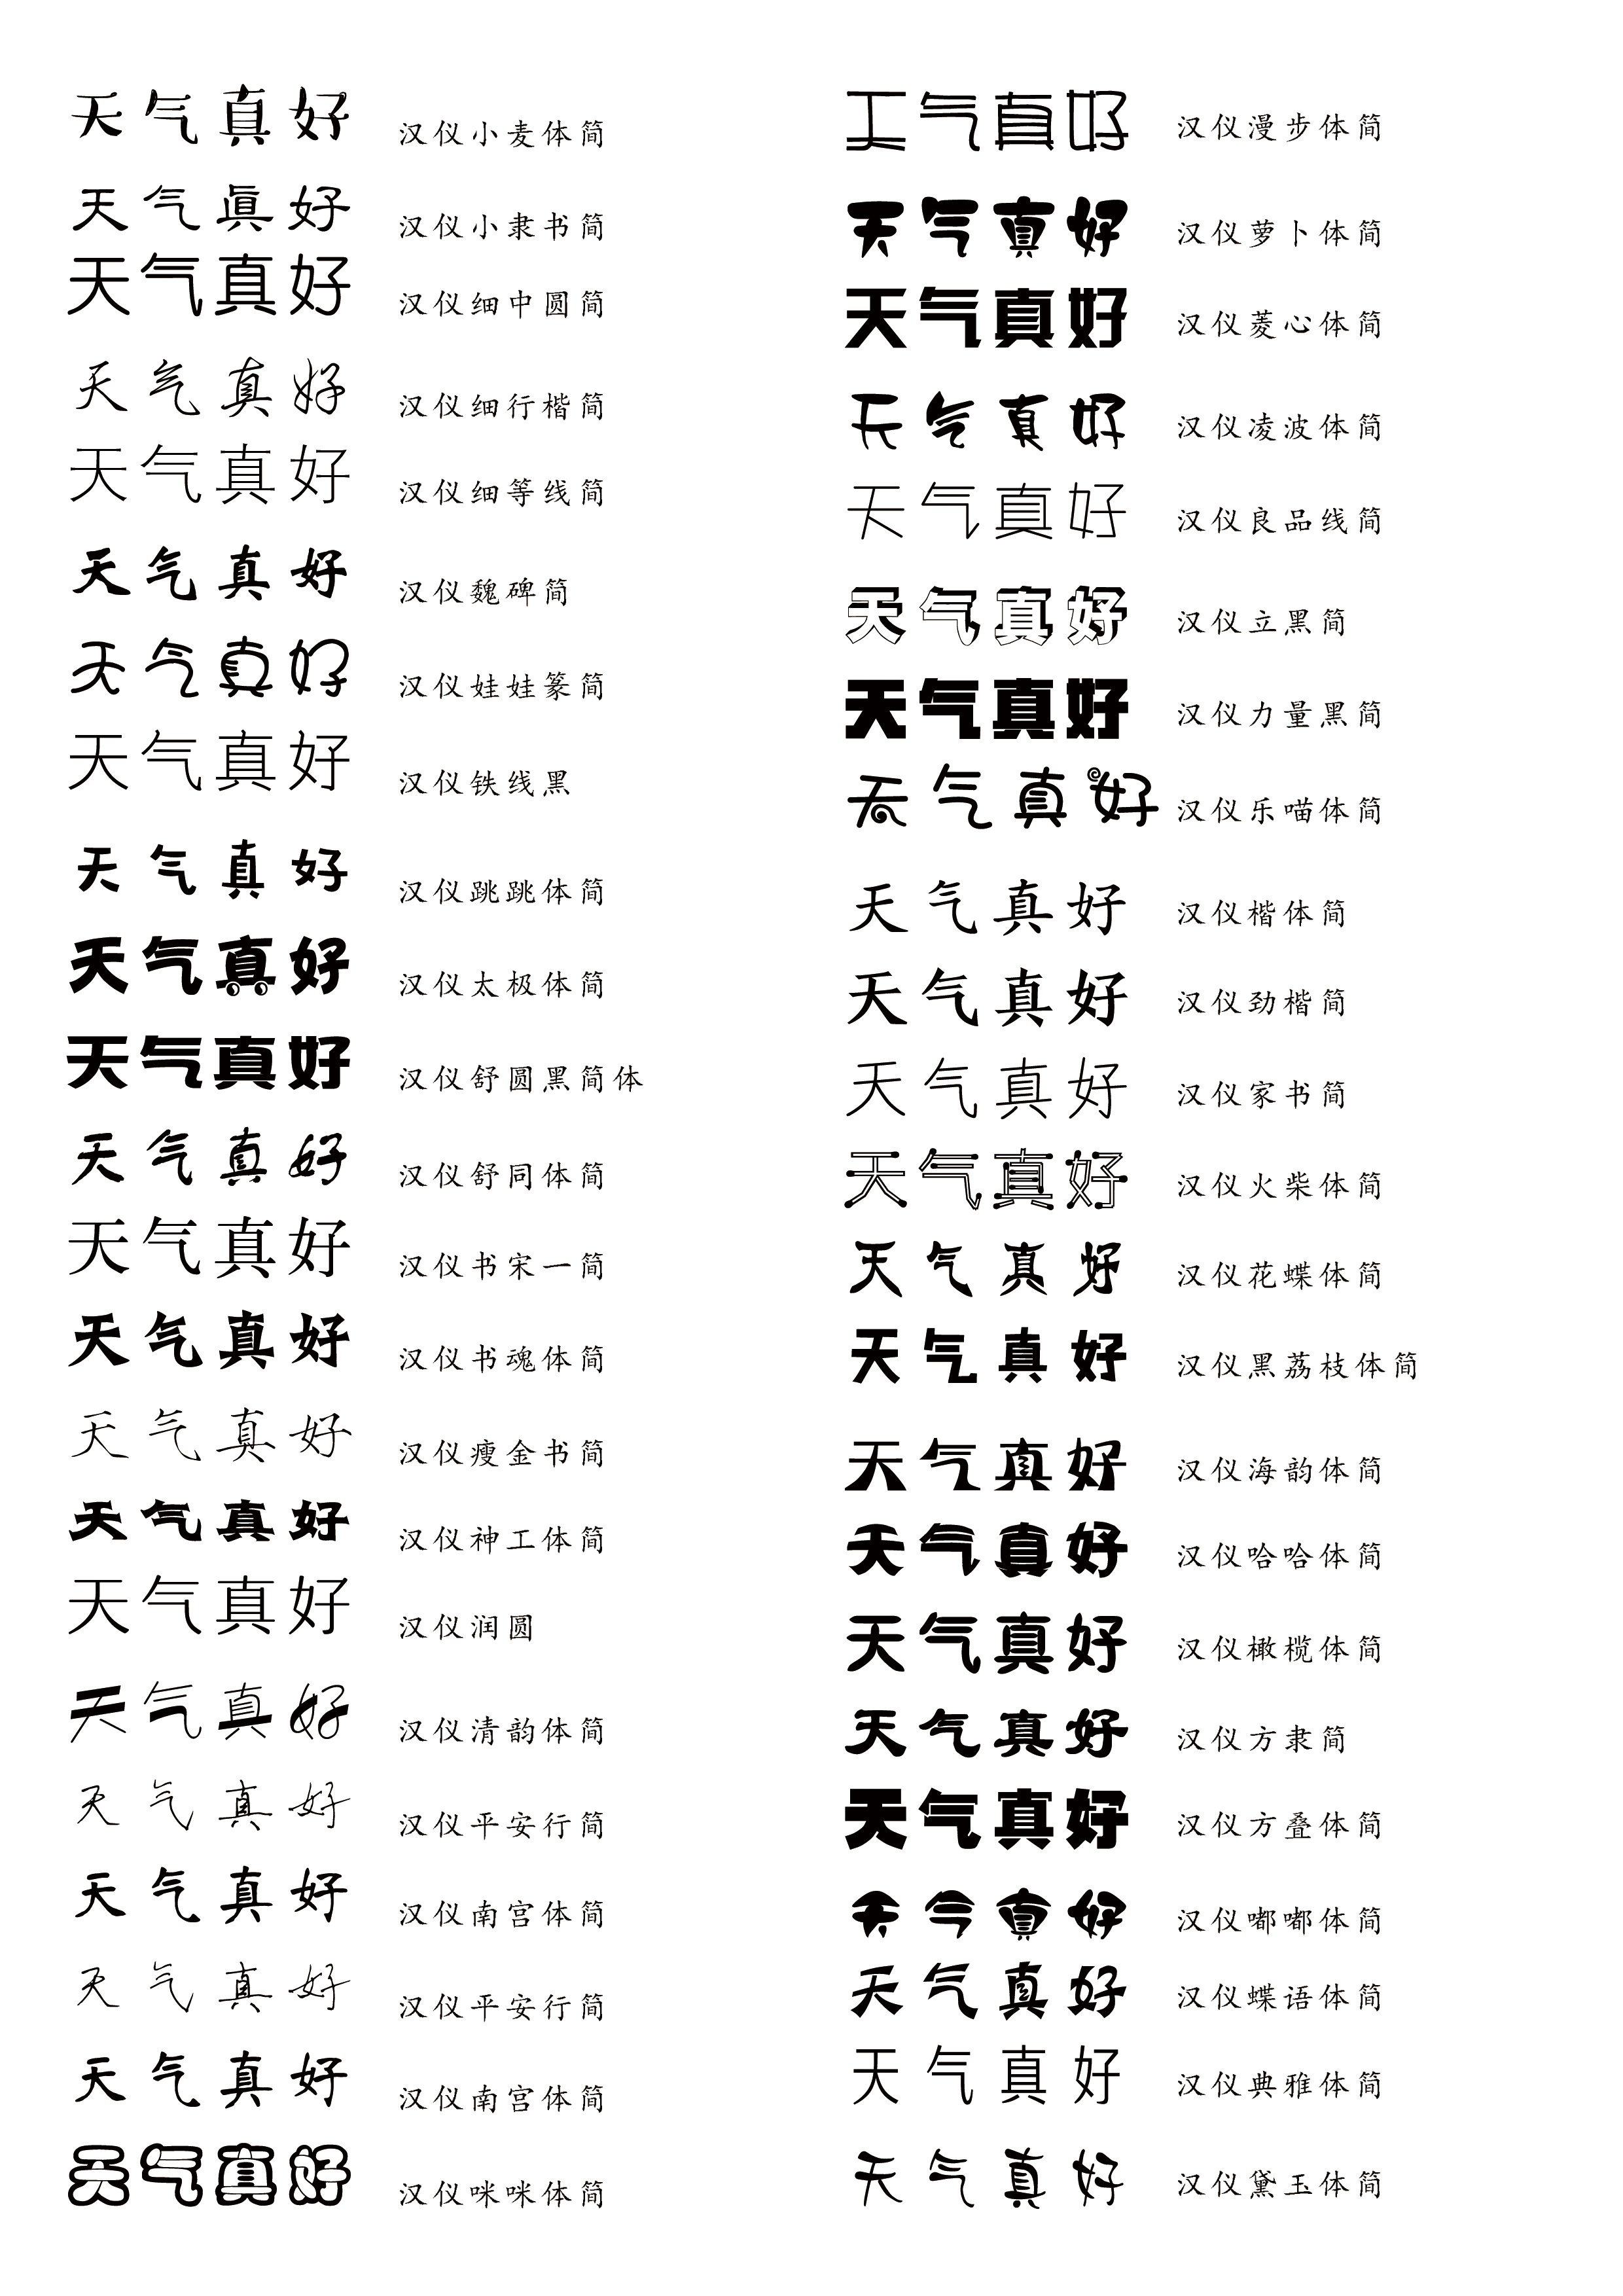 中文字体样式大全图片